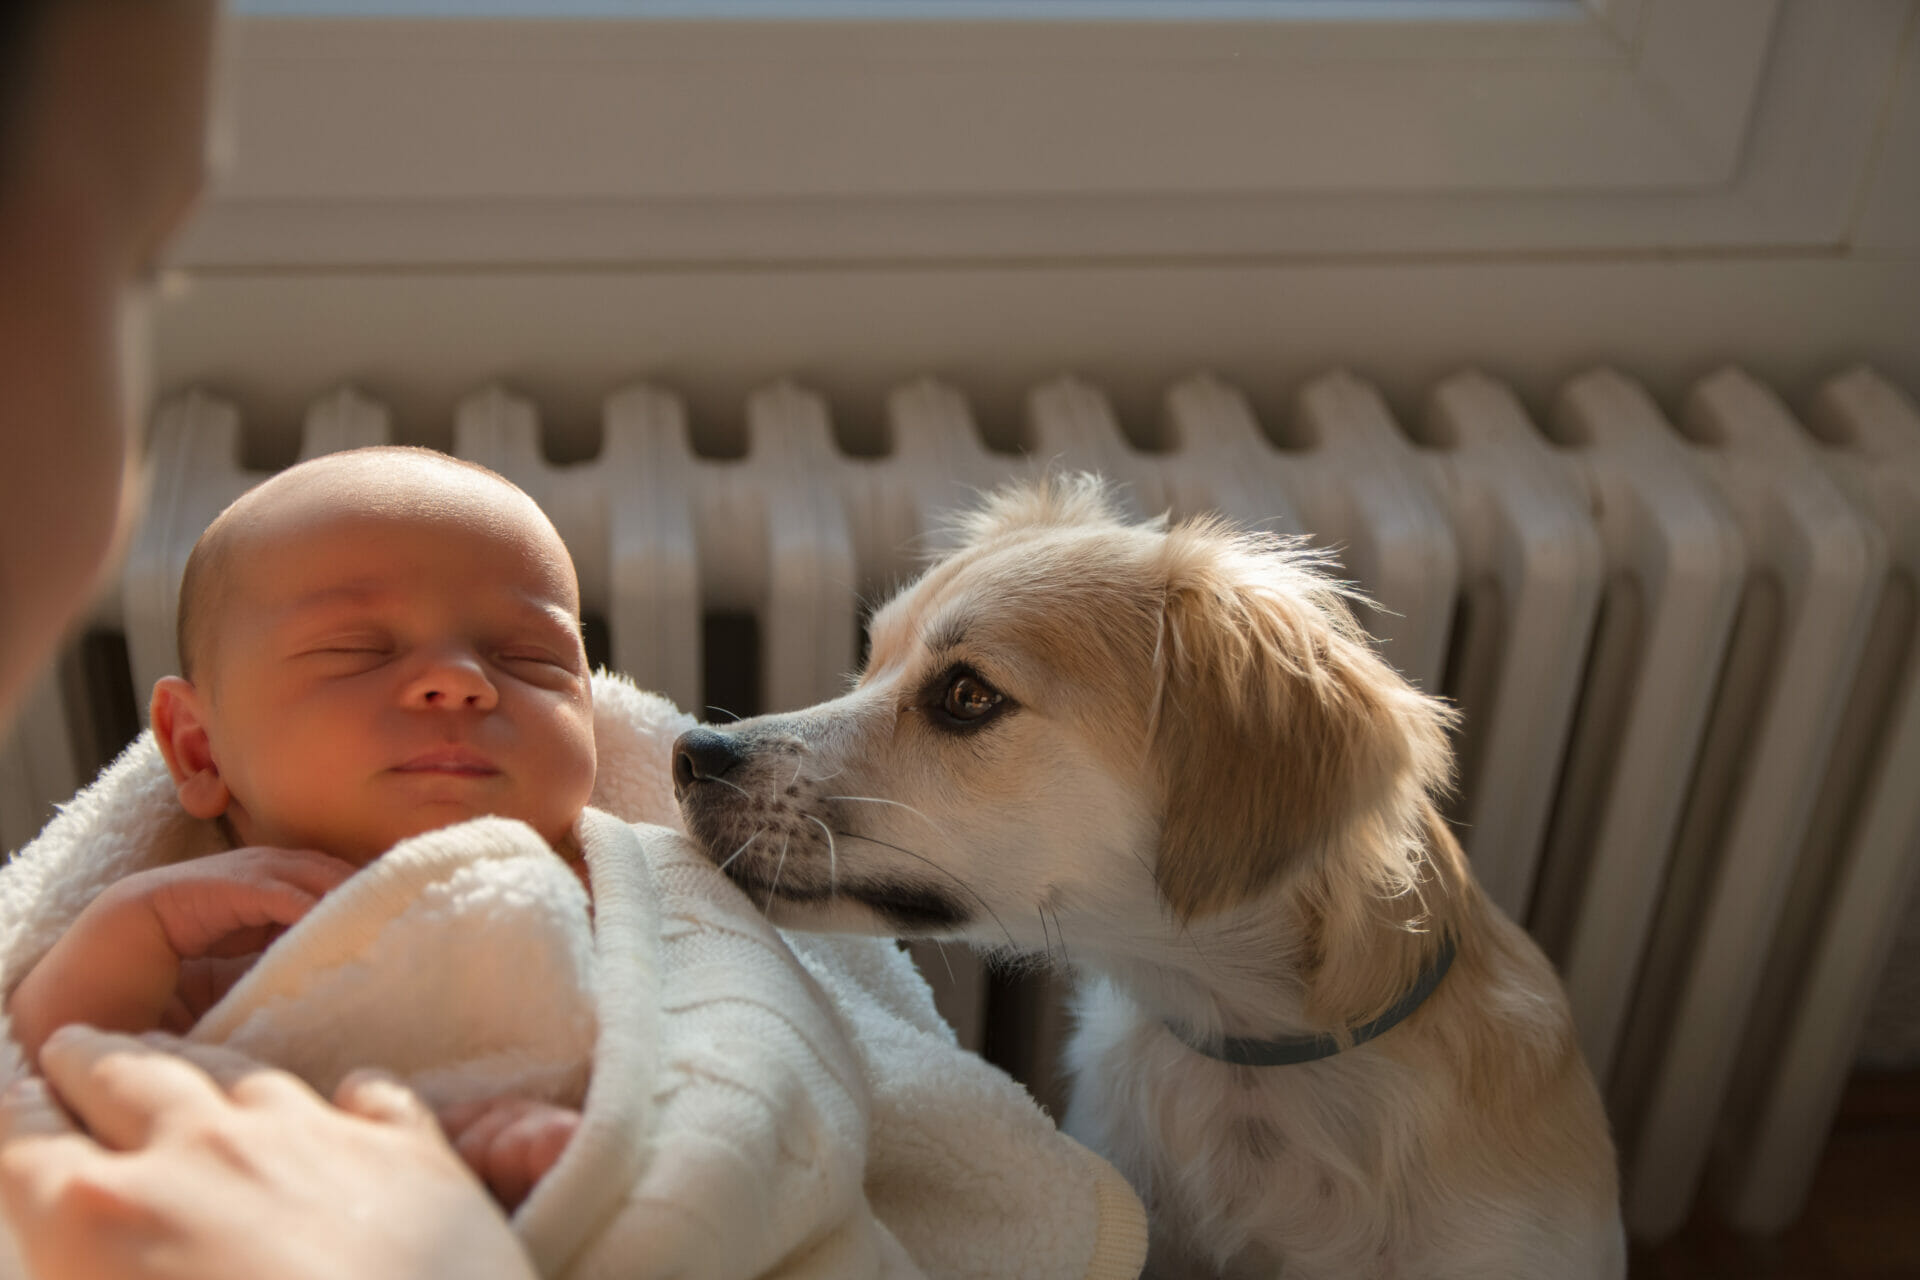 Dog next to baby